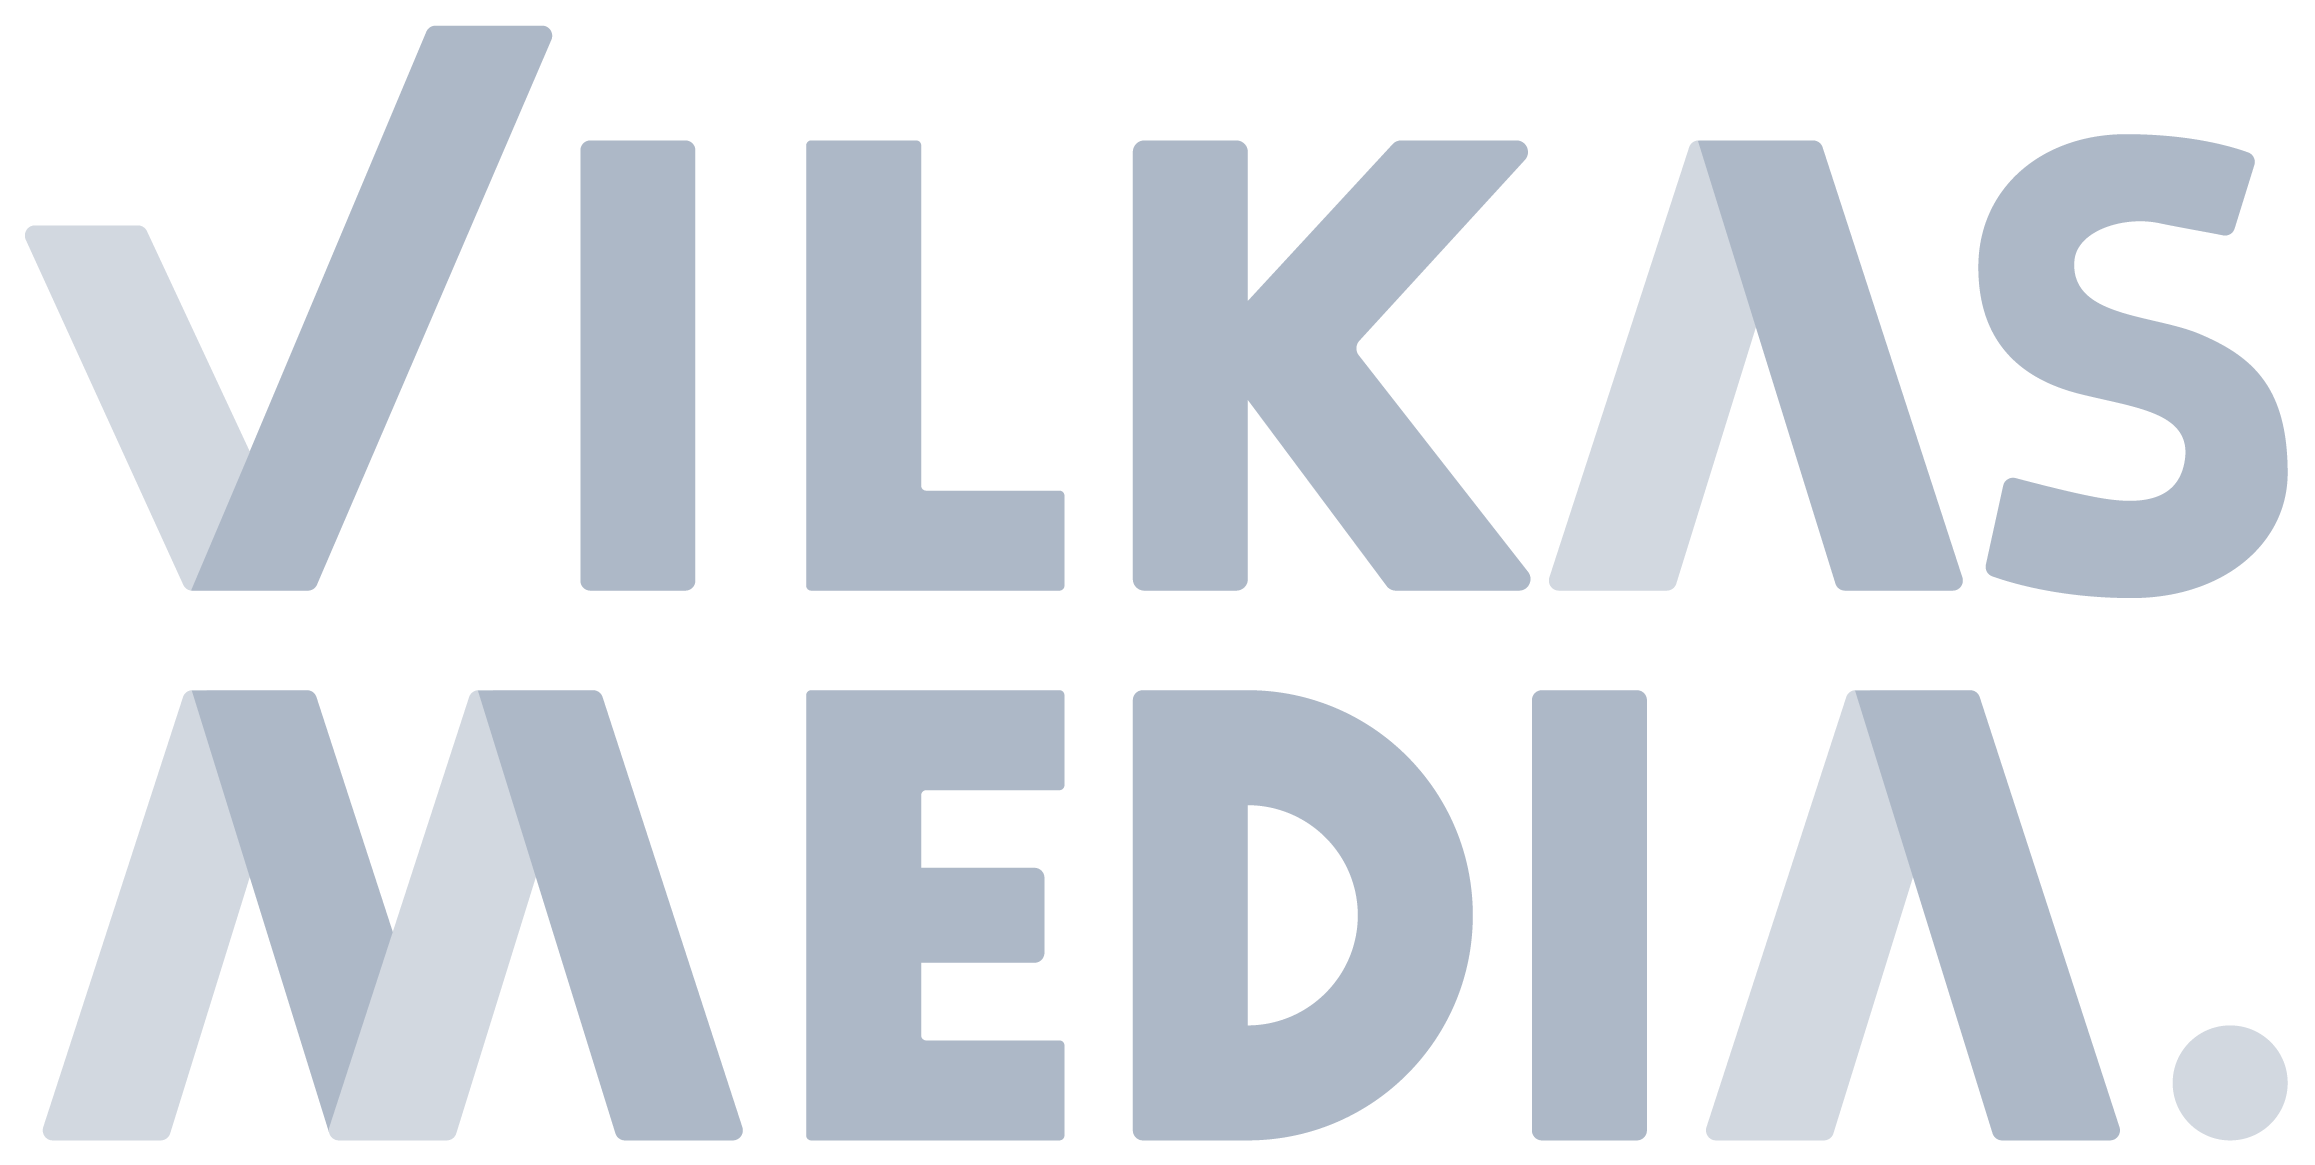 VilkasMedia